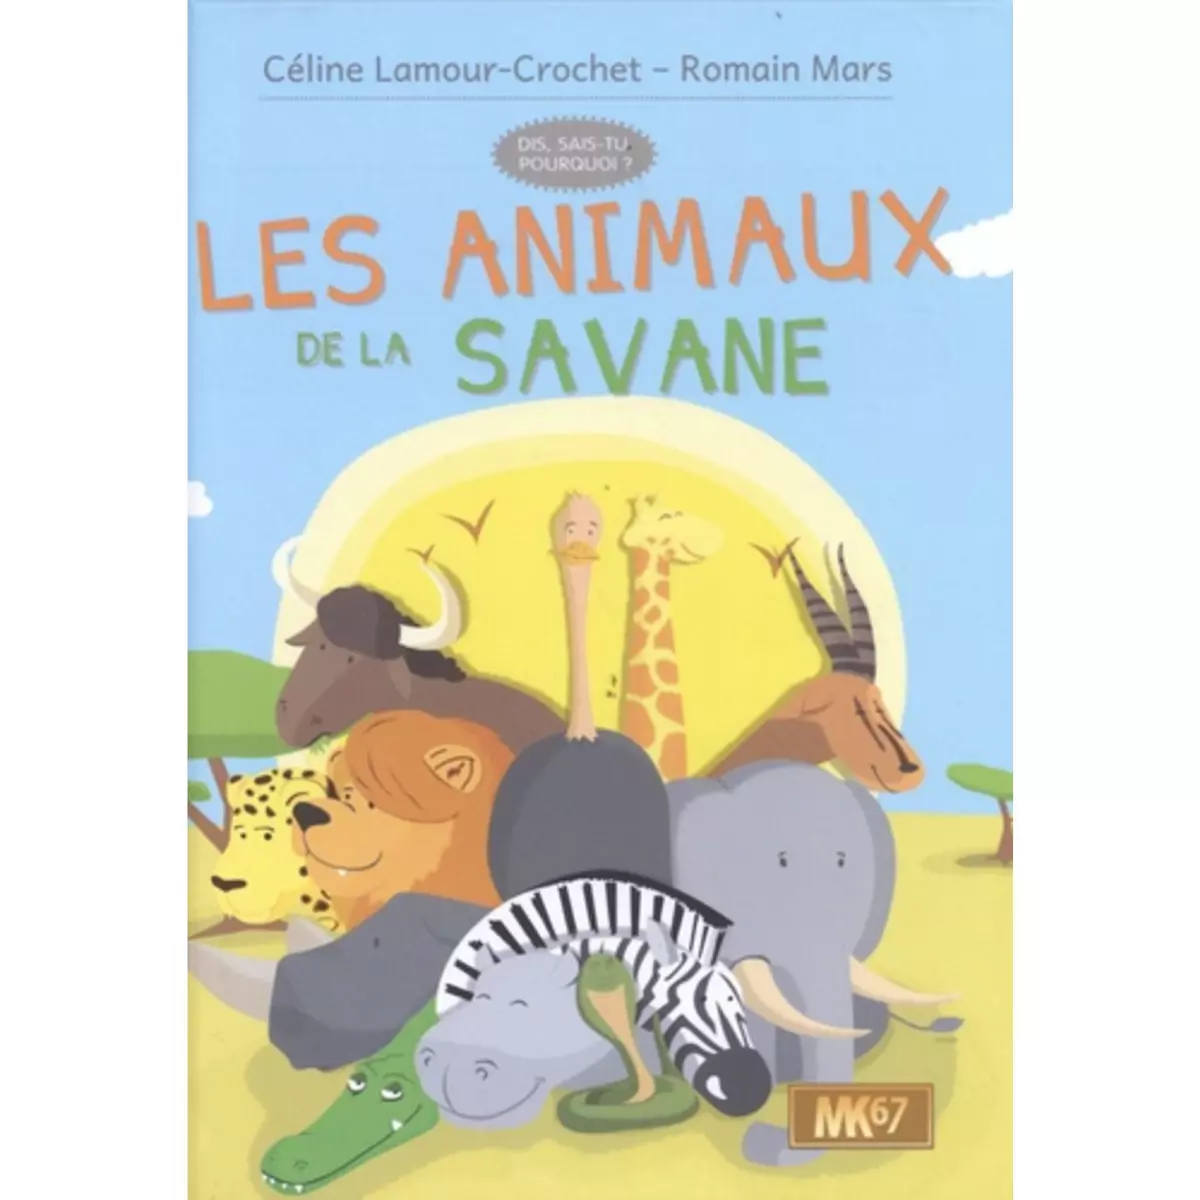  LES ANIMAUX DE LA SAVANE, Lamour-Crochet Céline